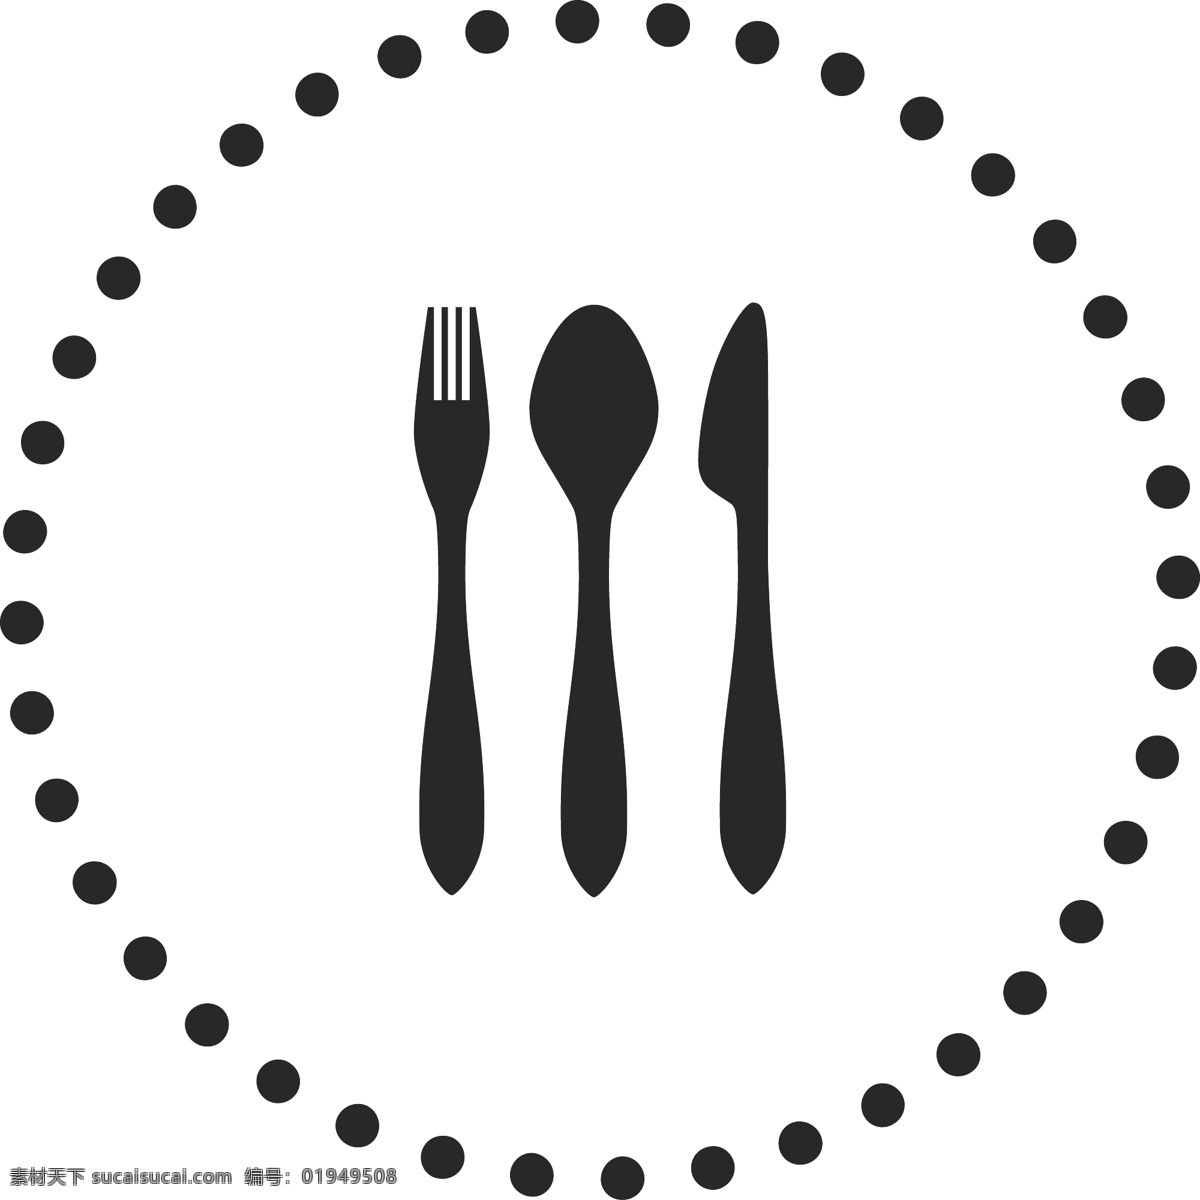 黑色 刀叉 餐具 图标 免 扣 图 符号 按钮 刀叉餐具 网页图标 按钮图标 应用按钮 ui应用图标